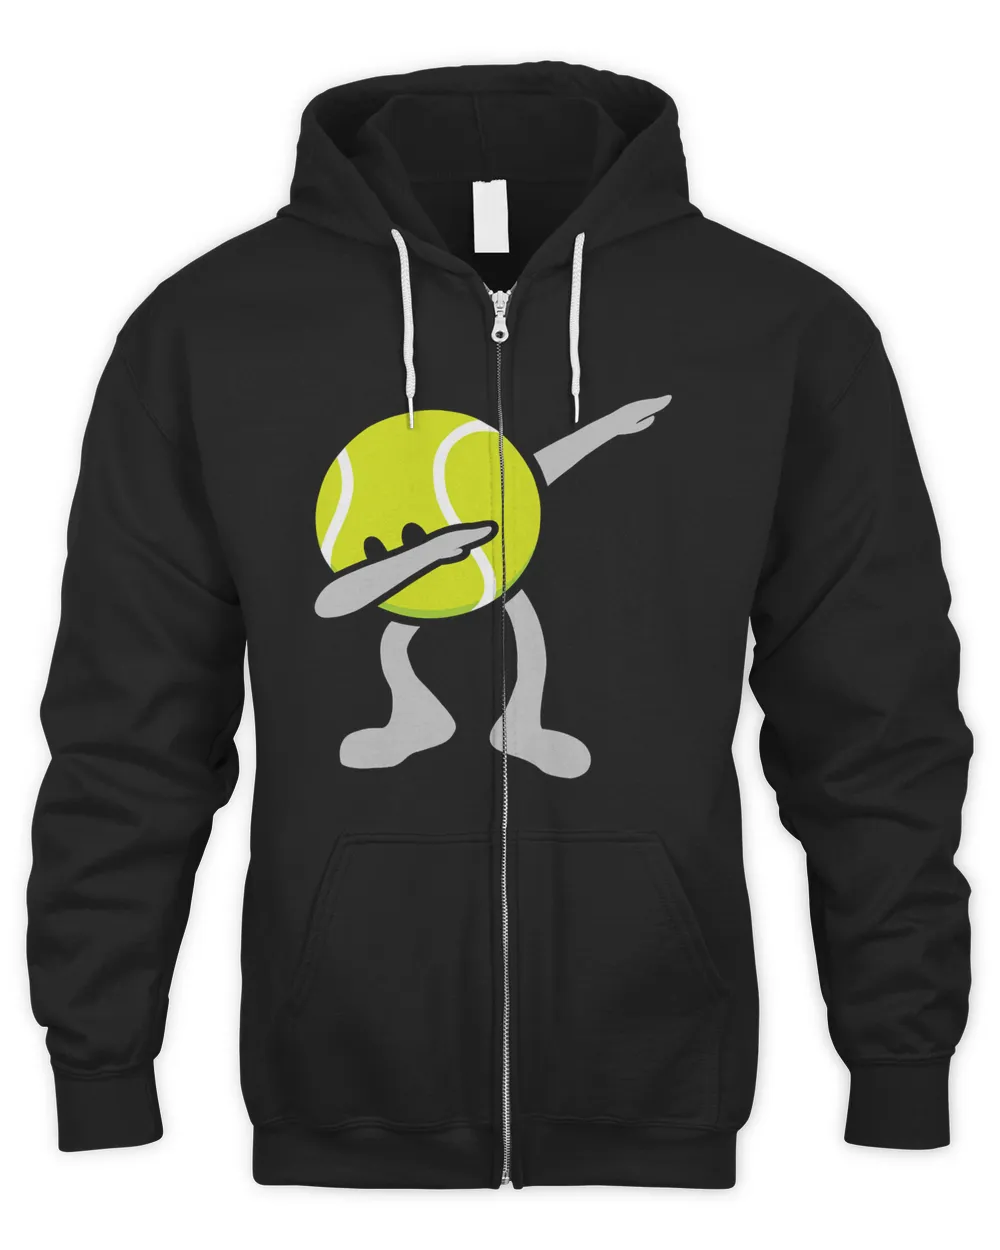 Funny Dabbing Tennis Ball T-Shirt